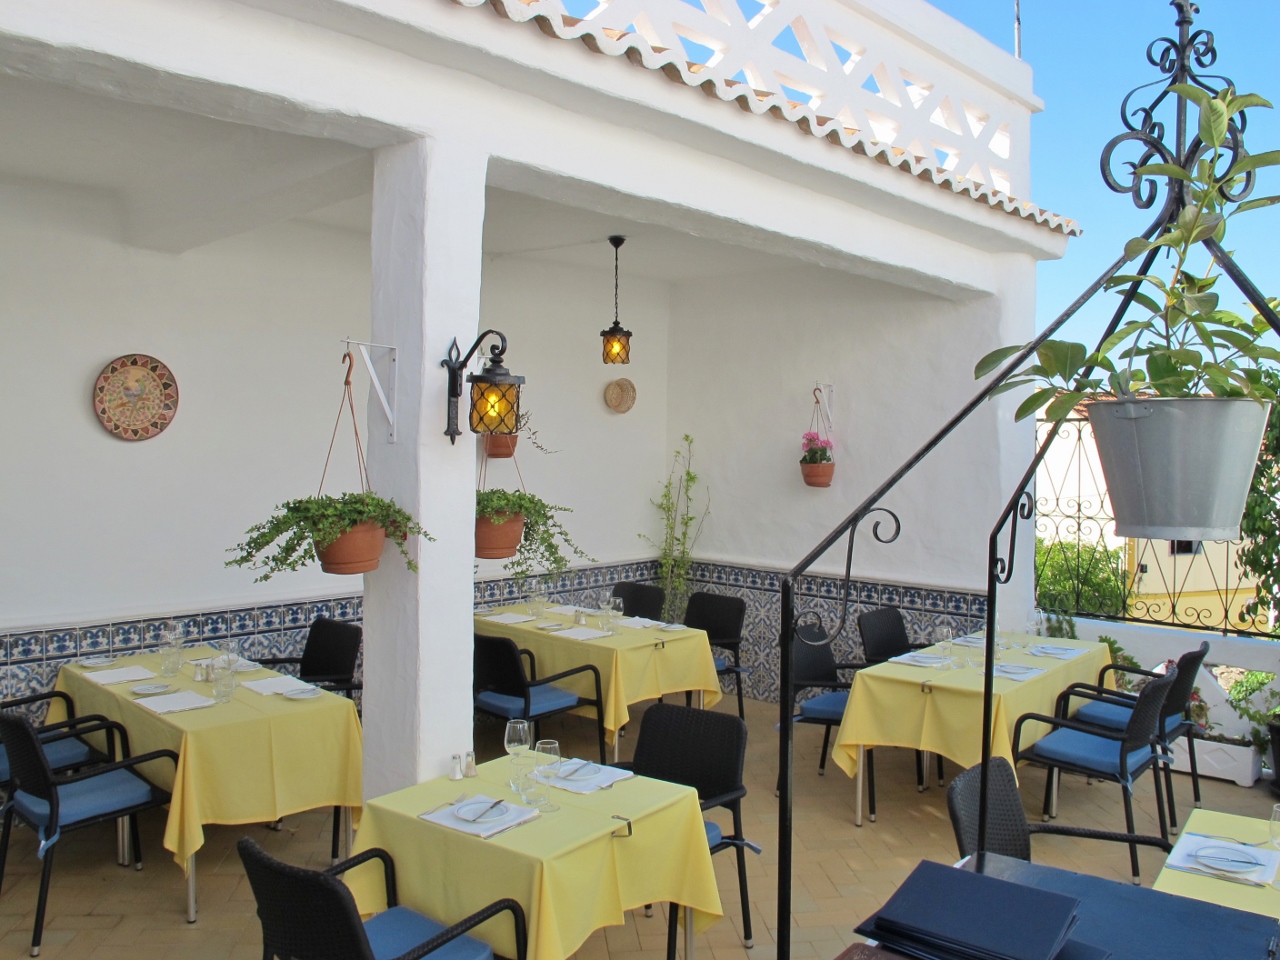 Best Romantic Restaurants in Algarve